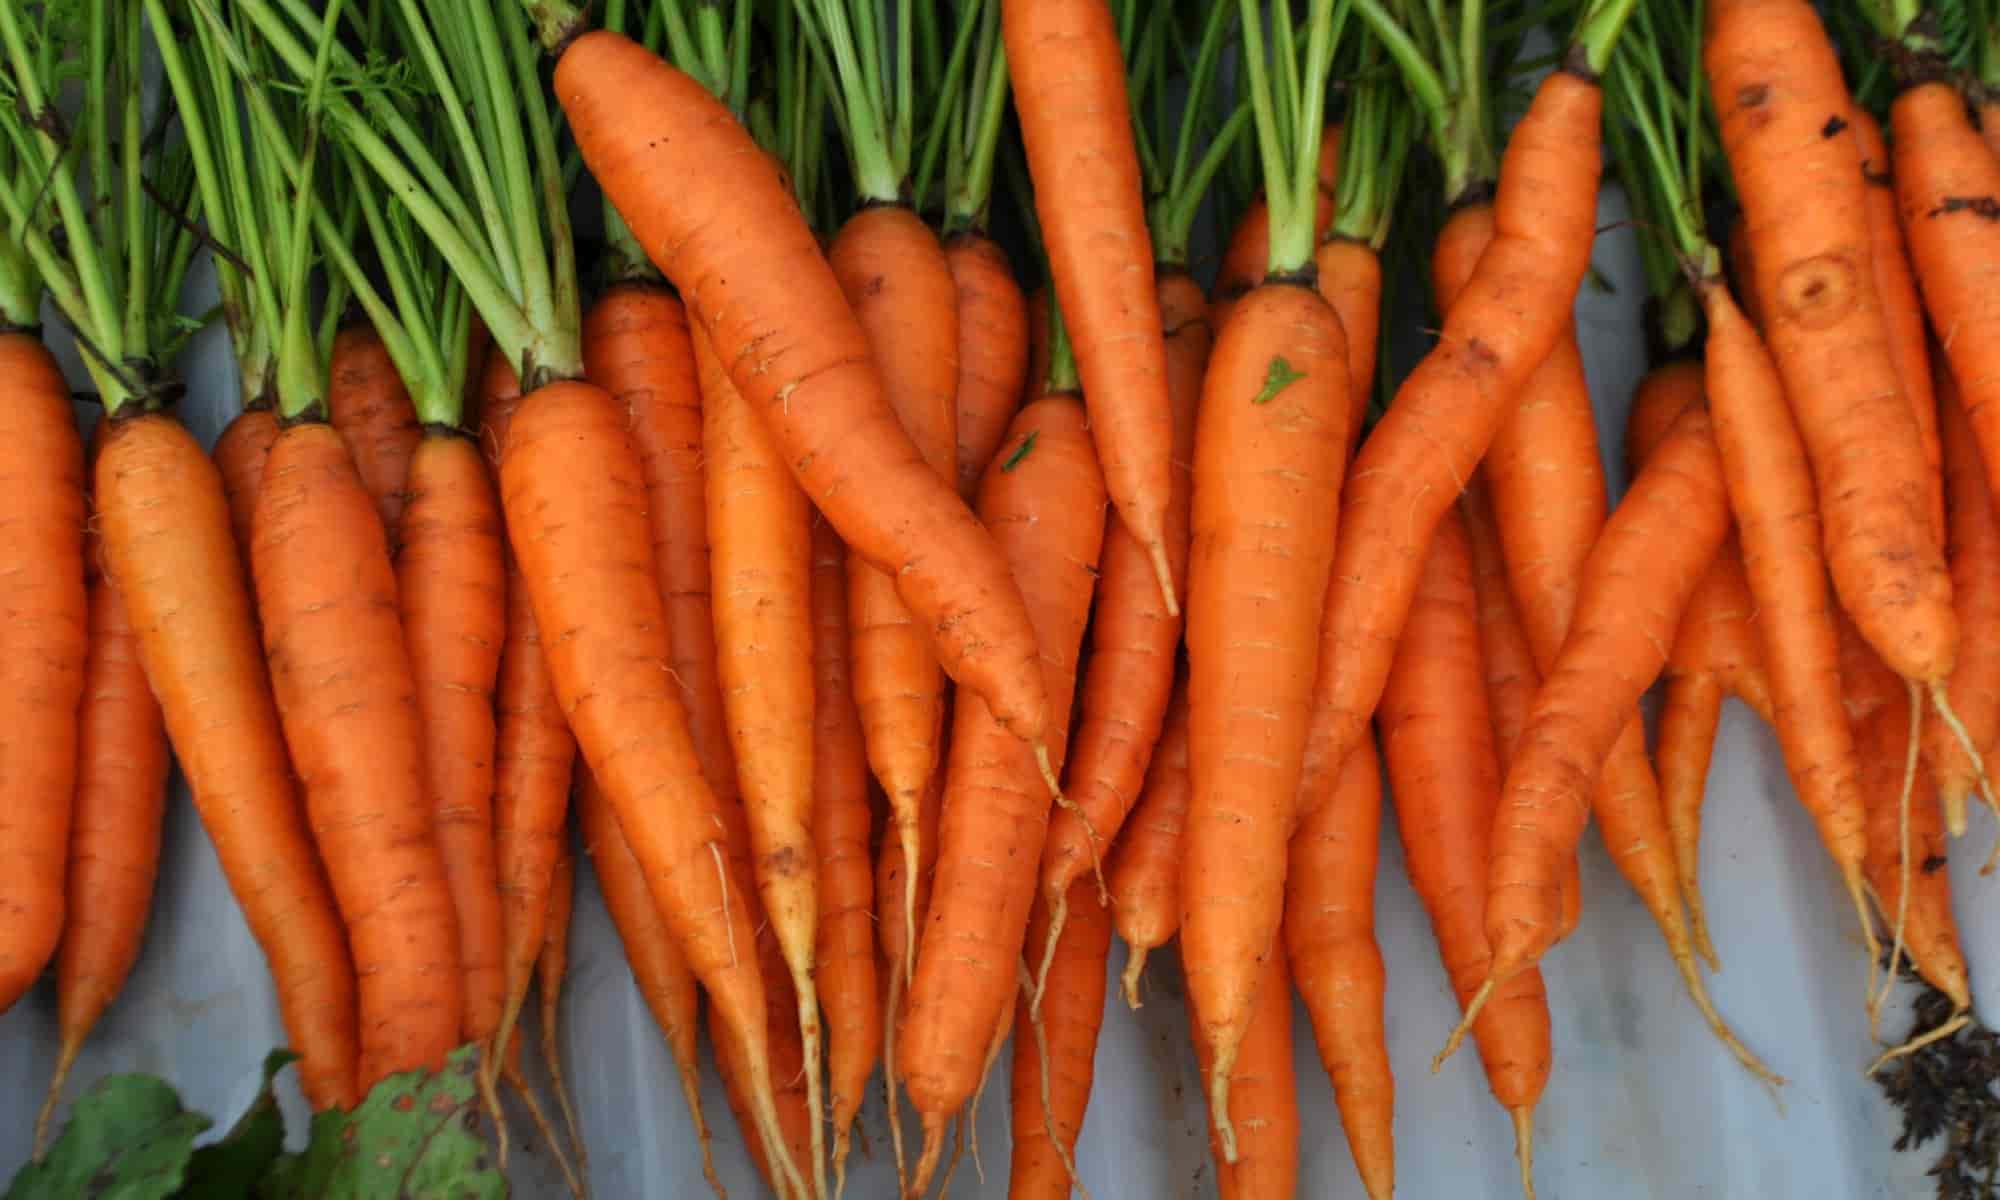 پخش عمده هویج فرنگی گلخانه ای مرغوب با قیمت منصفانه